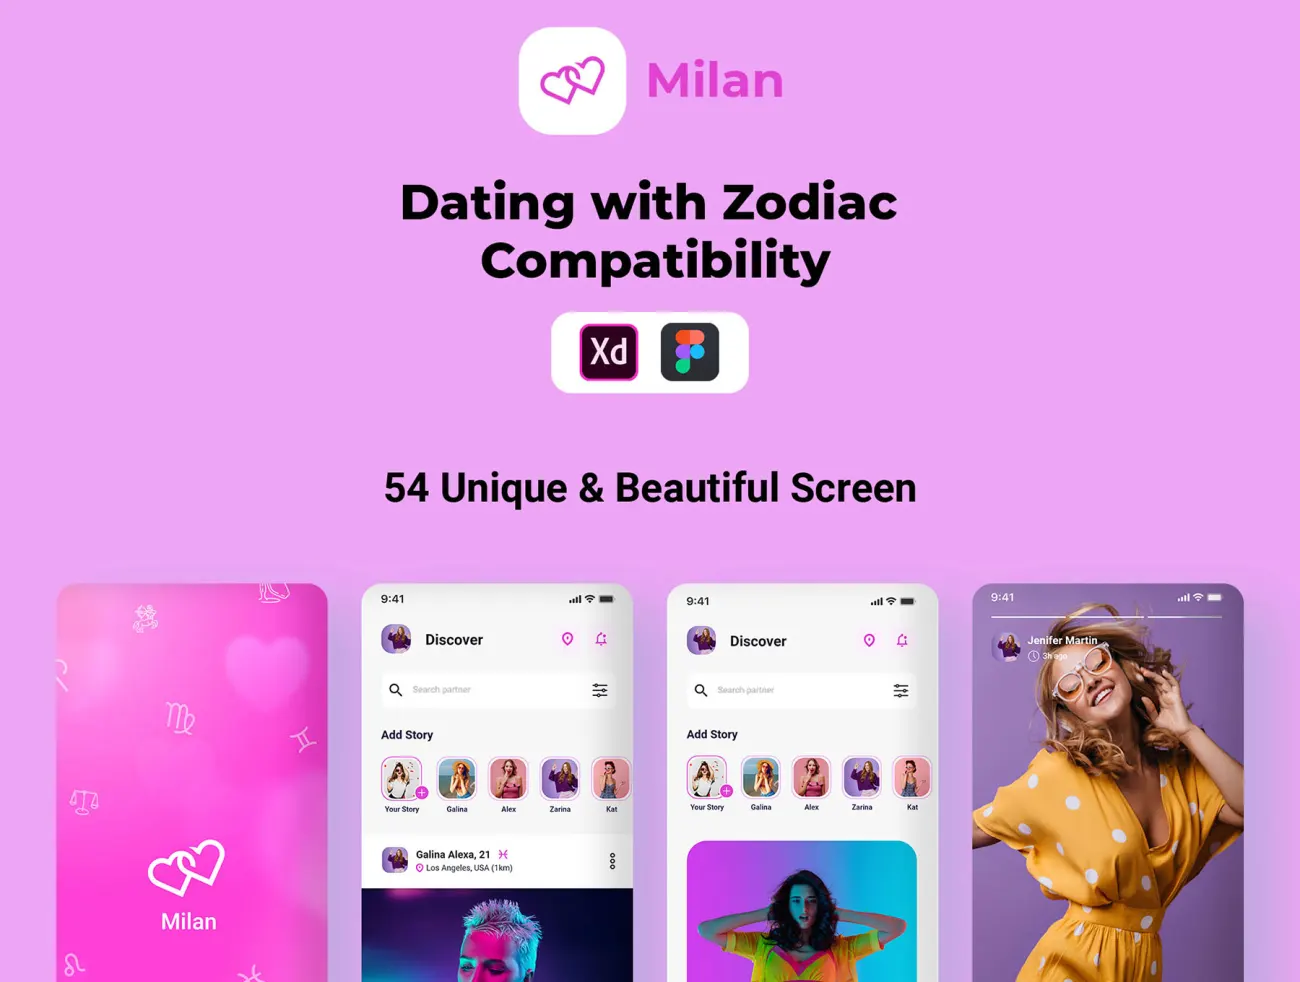 54屏生肖匹配在线约会平台应用UI设计套件 Milan - Dating with Zodiac Compatibility .xd .figma-UI/UX、ui套件、主页、介绍、应用、登录页、网购、表单、详情-到位啦UI